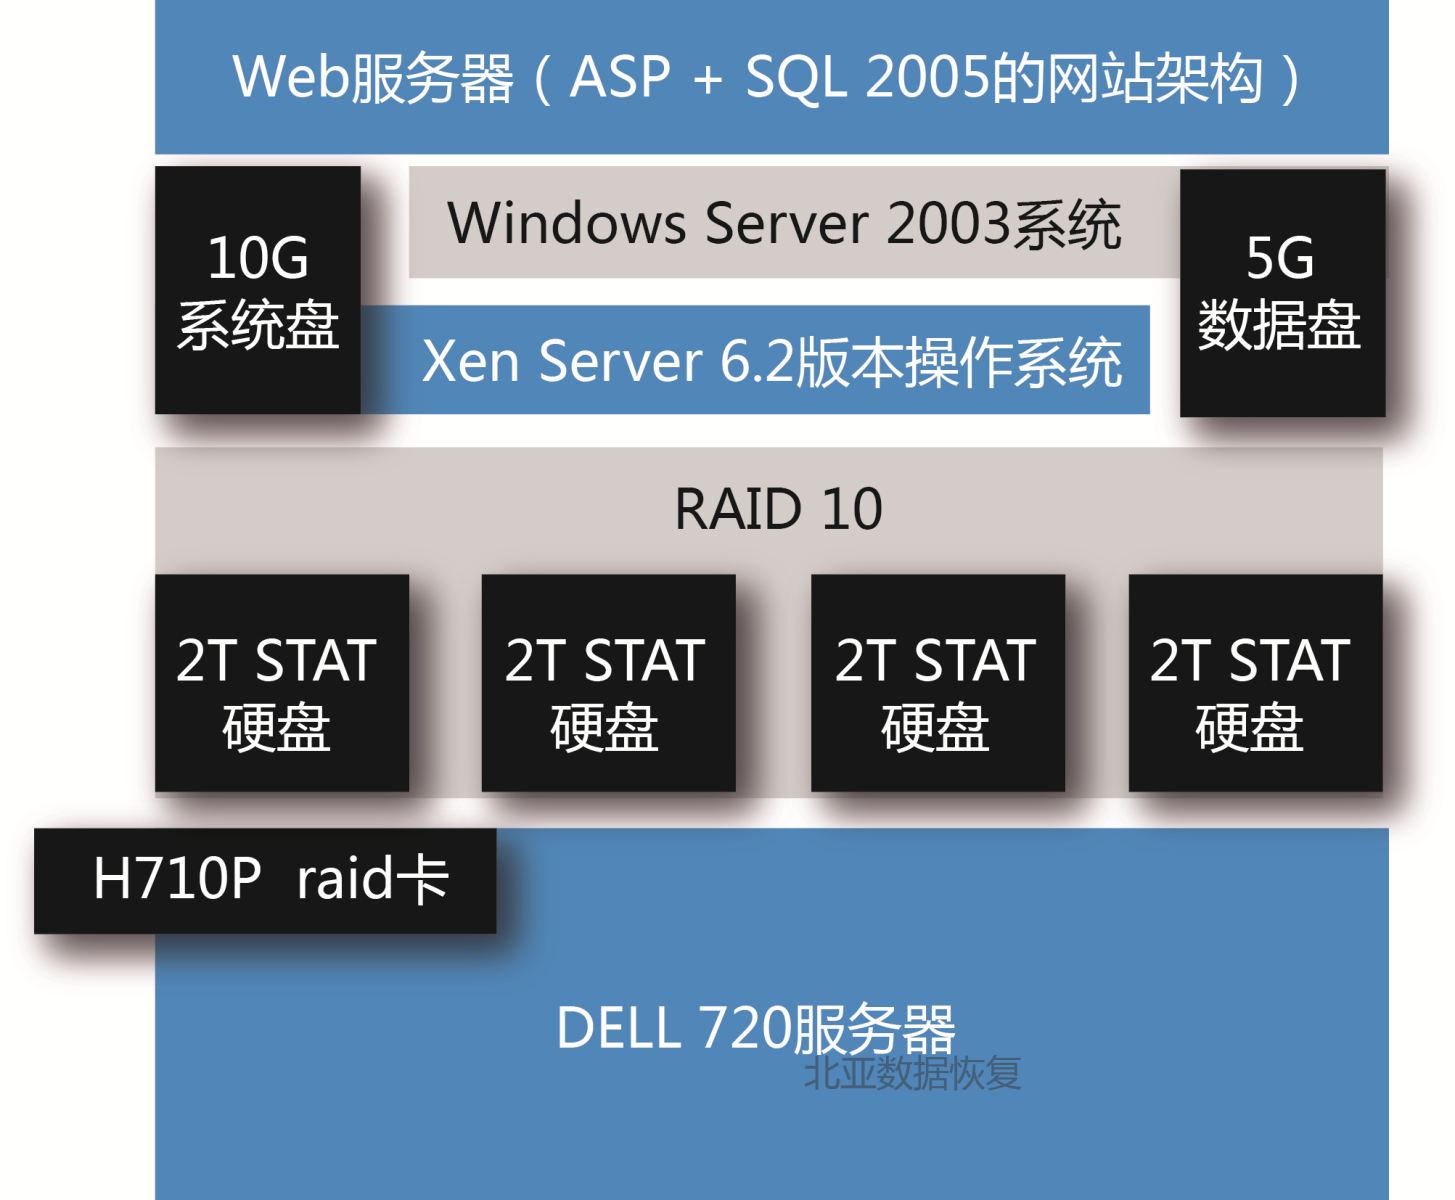 服务器意外断电导致Xen Server虚拟机不可用的数据恢复案例